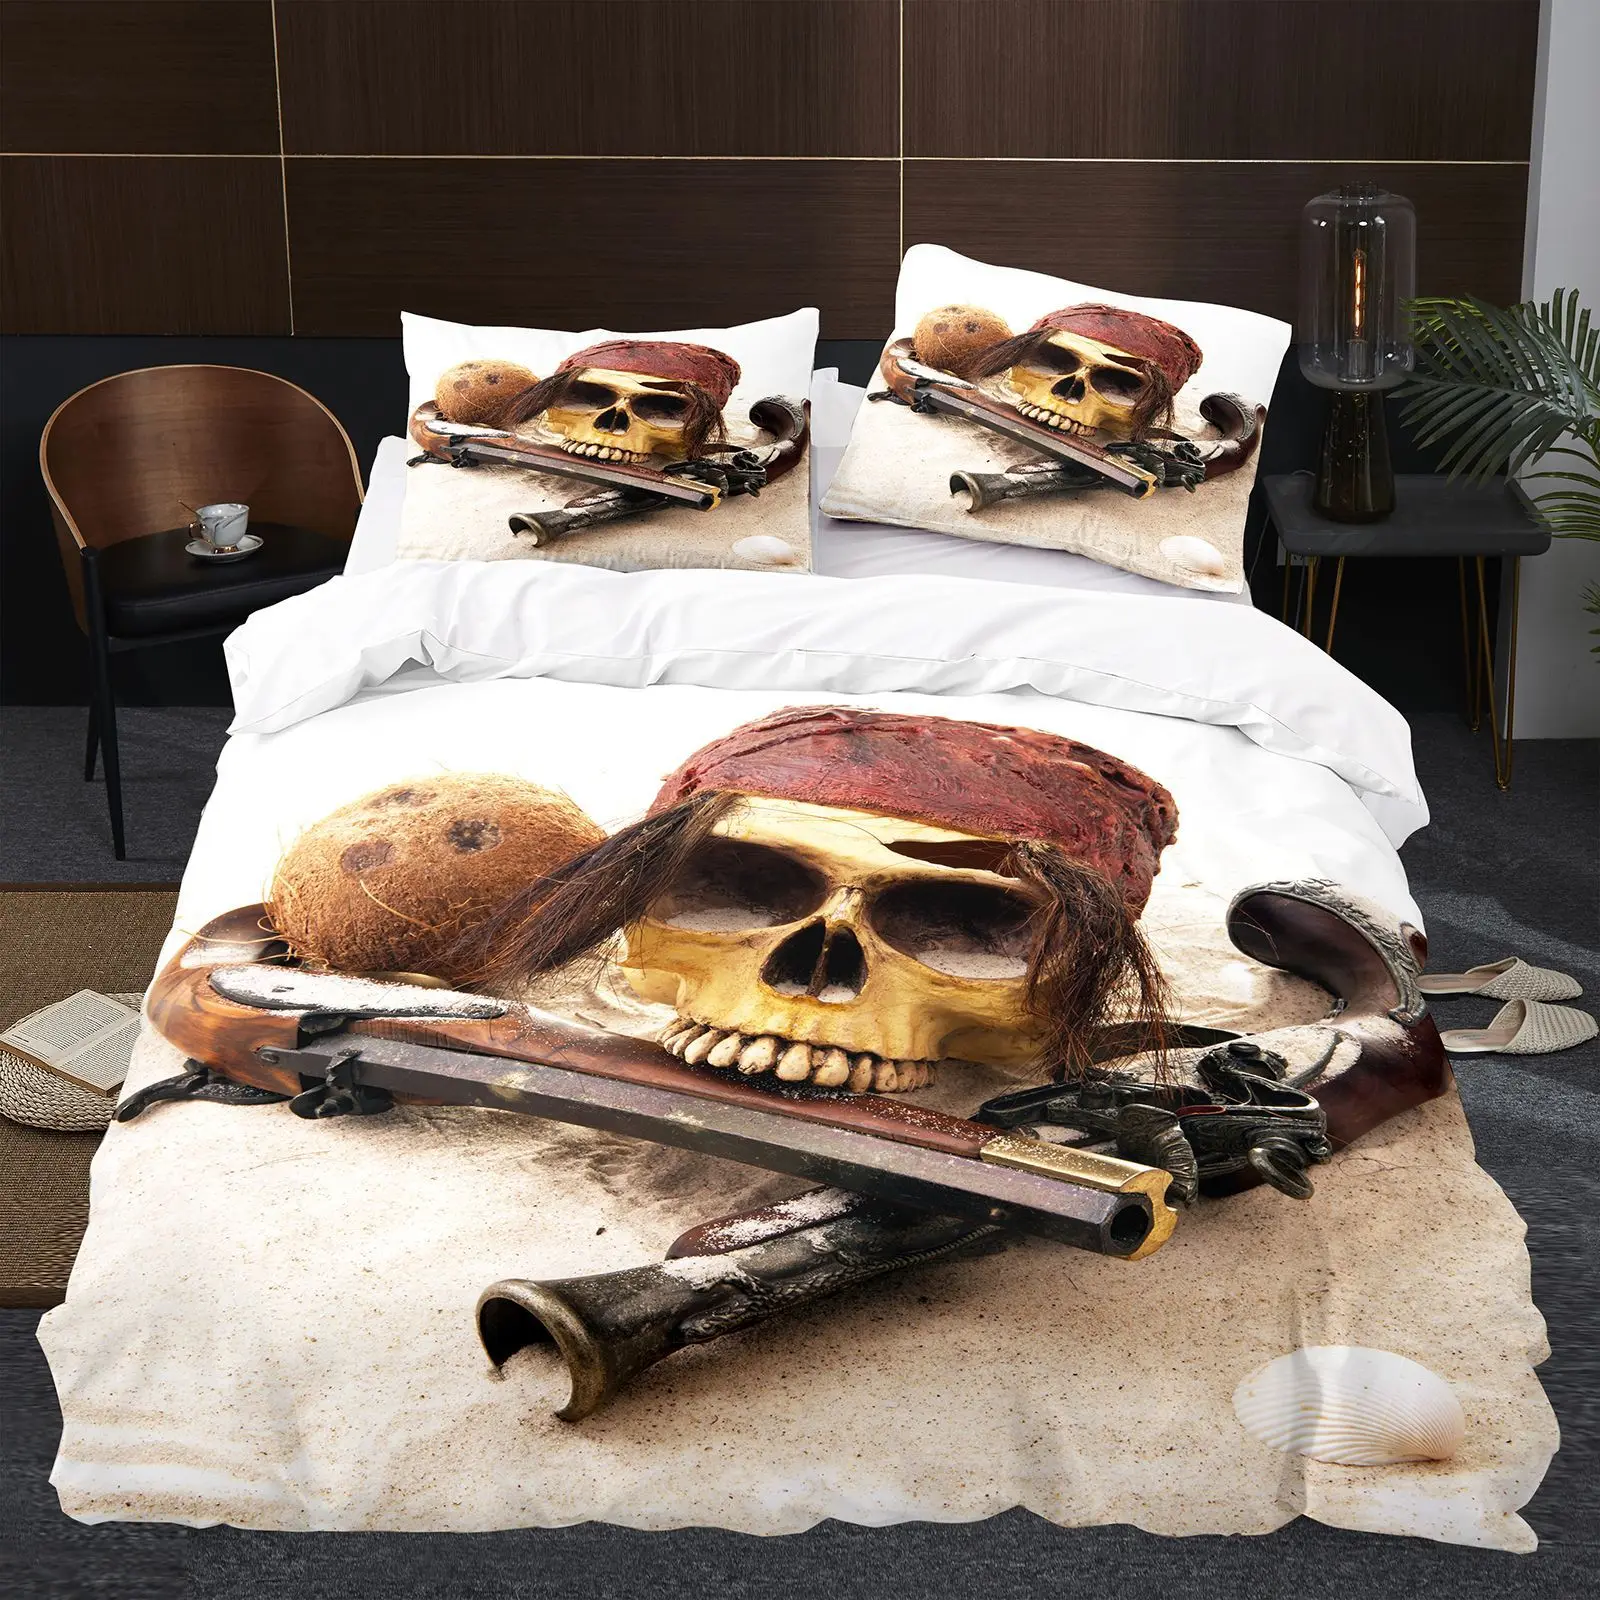 

Housse de couette Sugar Skull одеяло комплект постельного белья с рисунком черепа тематическое одеяло для детей мальчиков девочек подростков 3 шт.